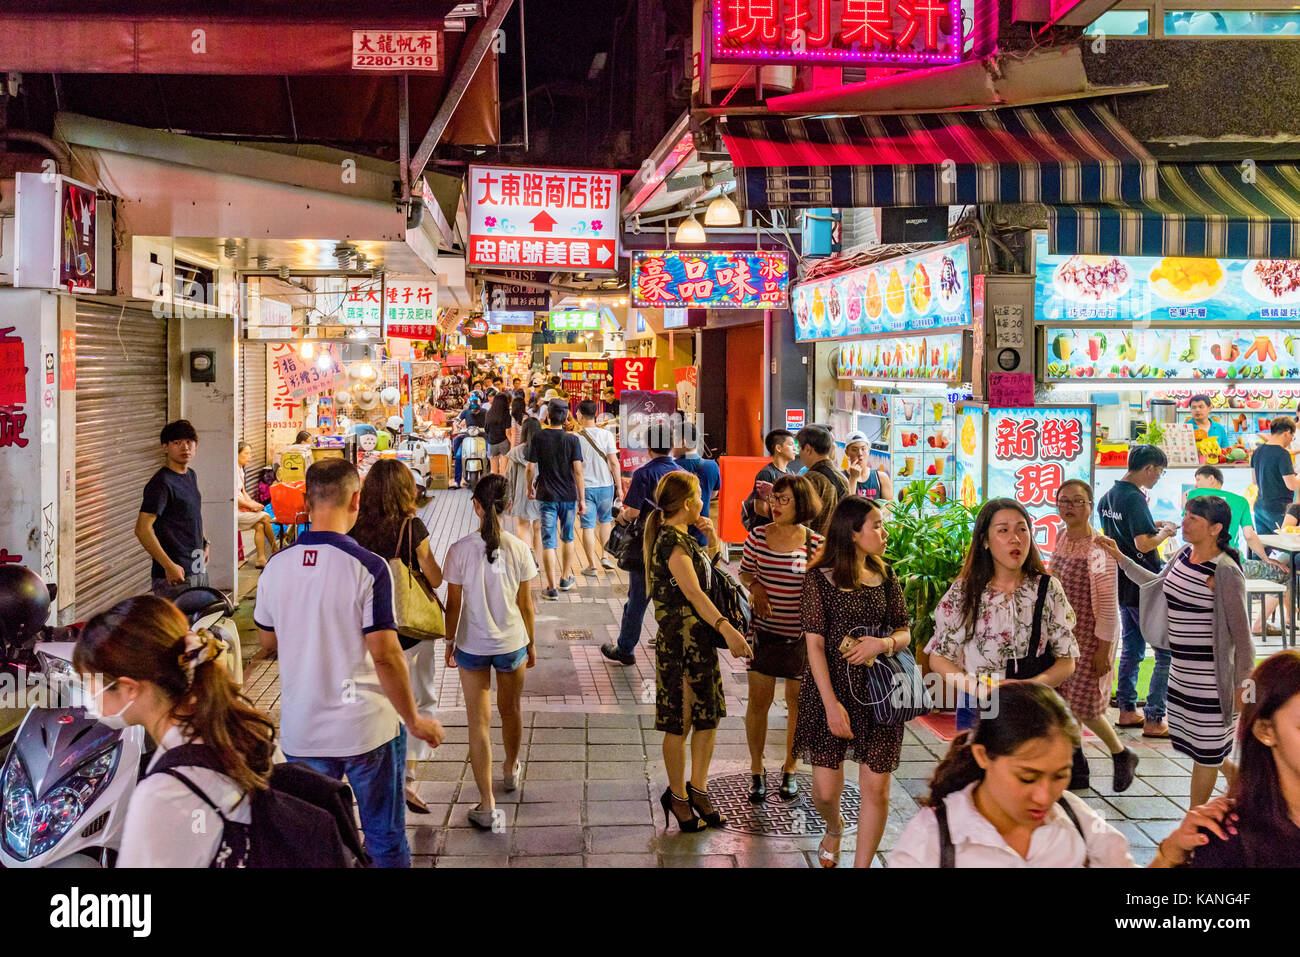 TAIPEI, Taiwan - 11. Juli: Dies ist eine berühmte Shilin Nachtmarkt Nachtmarkt, wo viele Leute kommen taiwanische Essen zu probieren und Einkaufen am 11. Juli, 2 Gehen Stockfoto